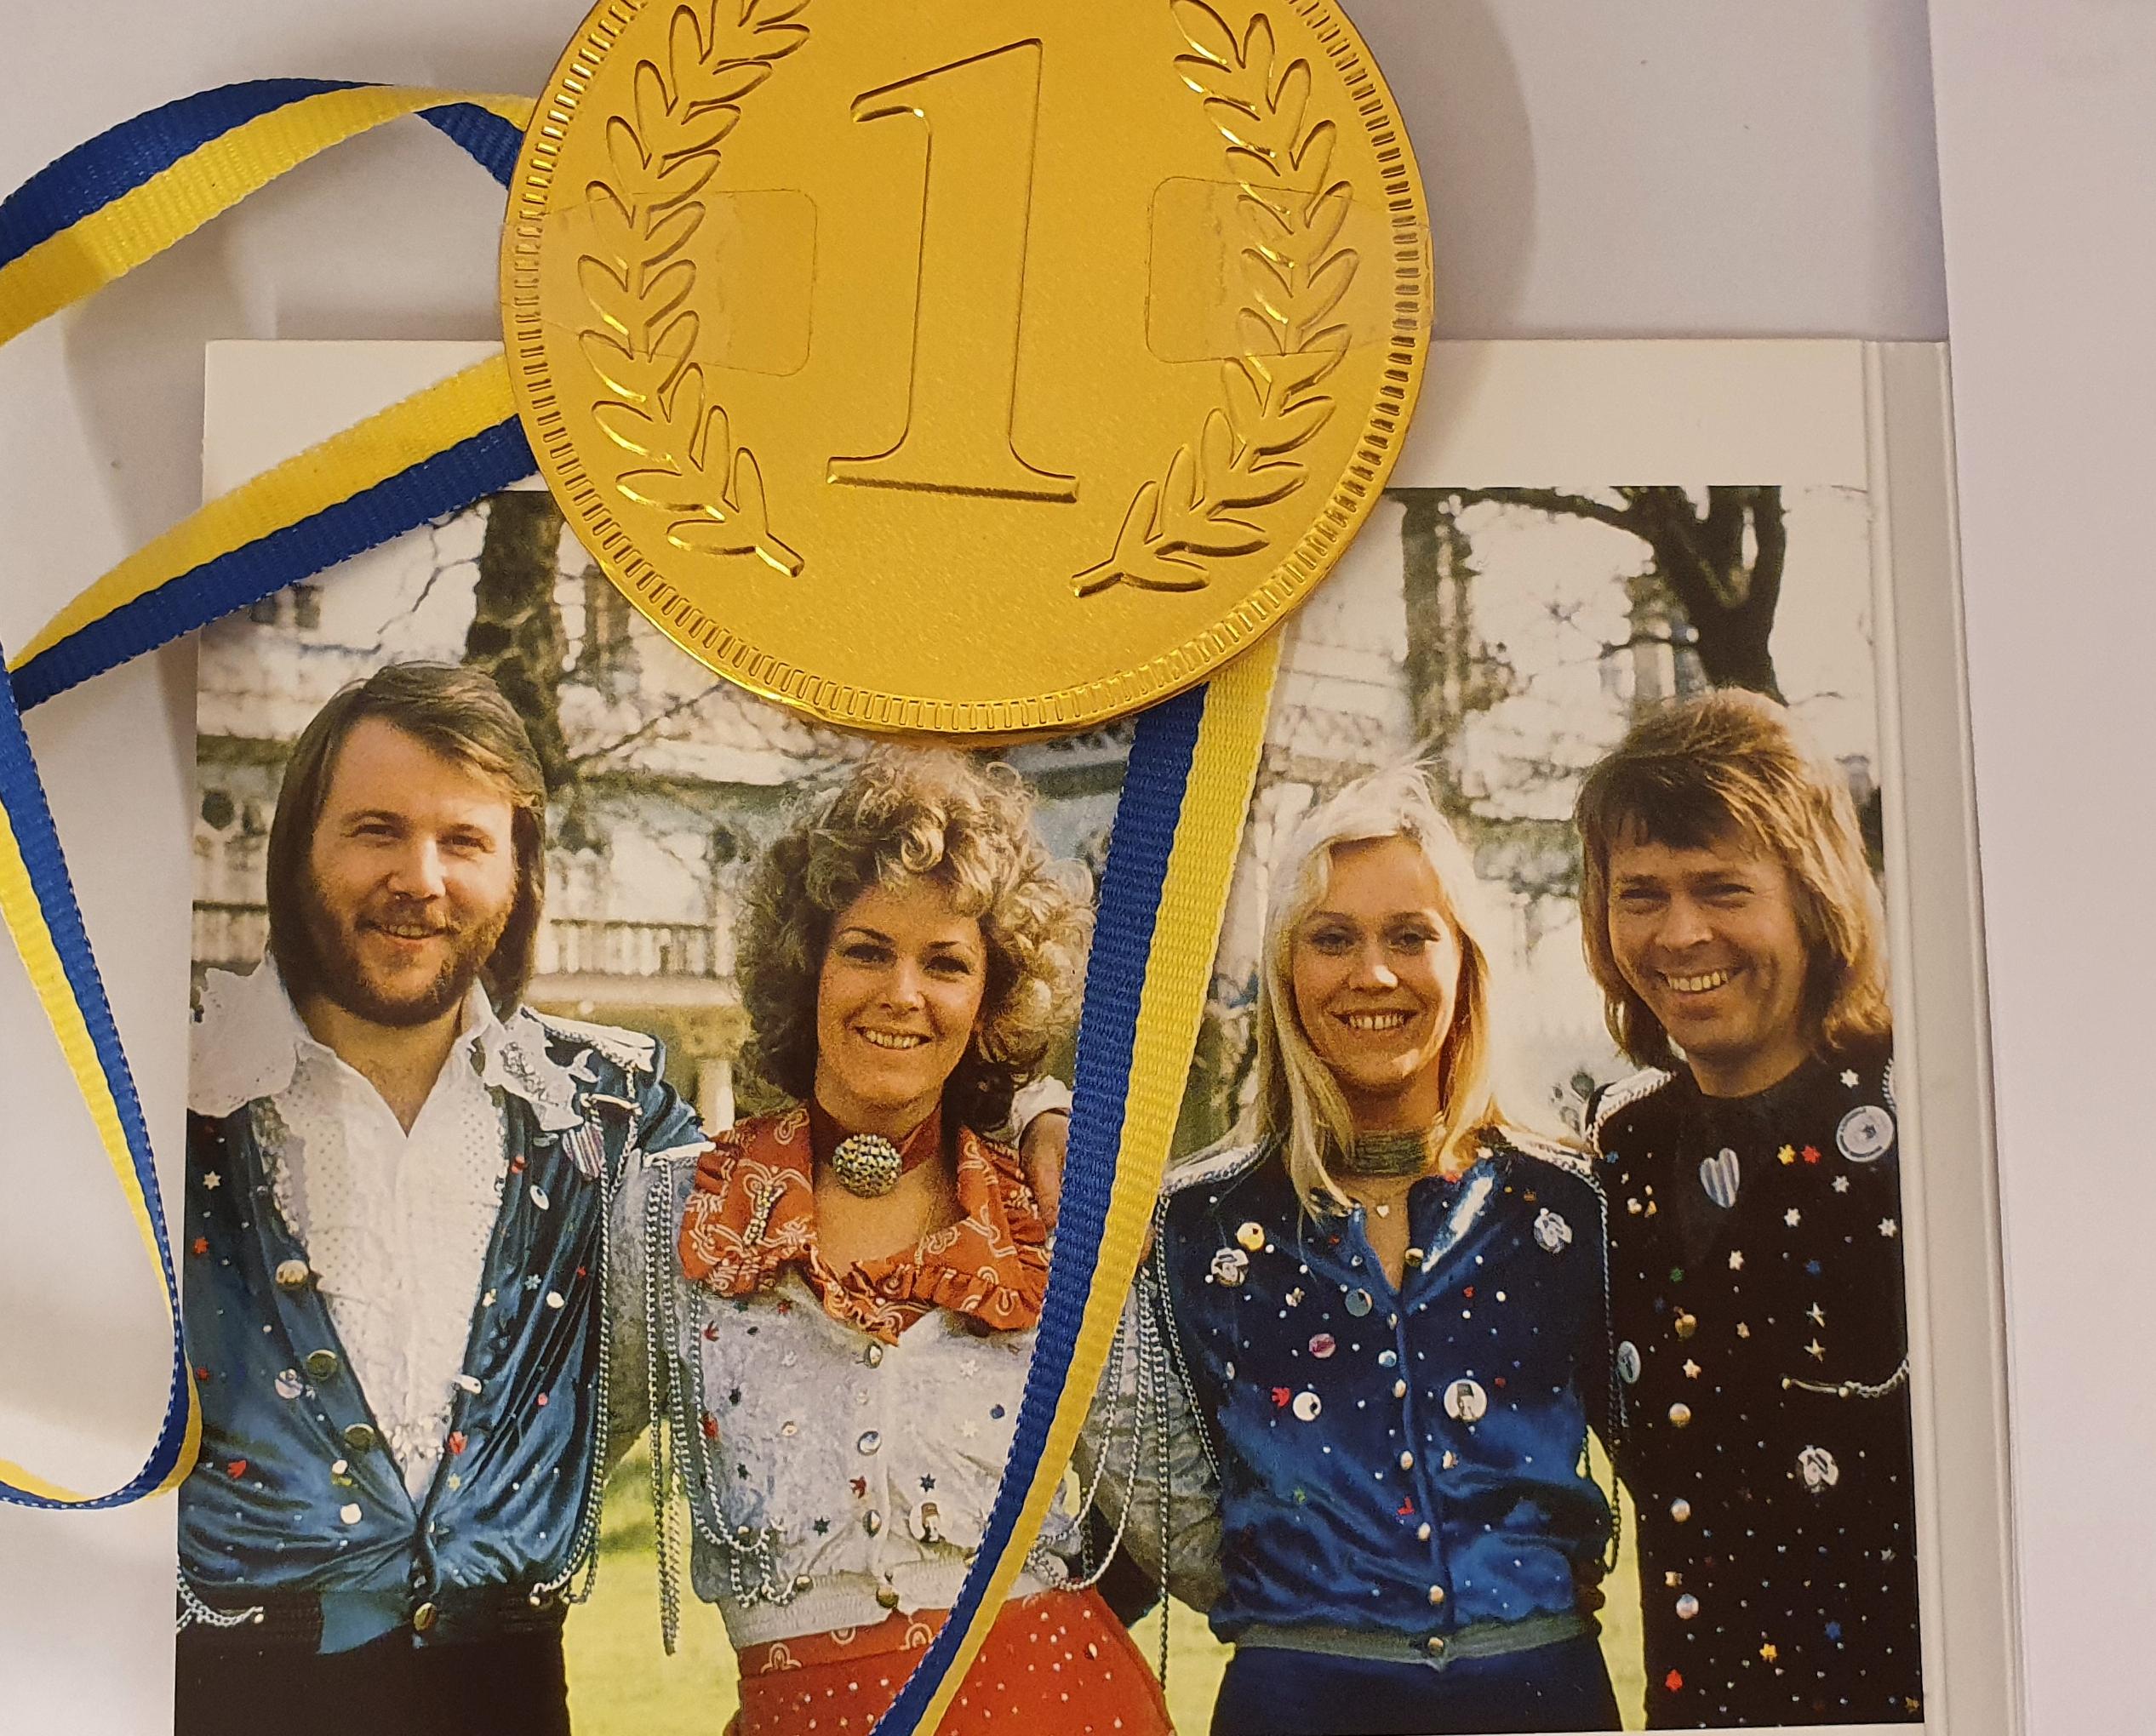 En guldmedalj med blågult band placerad över ett färgfoto med två kvinnor och två män 